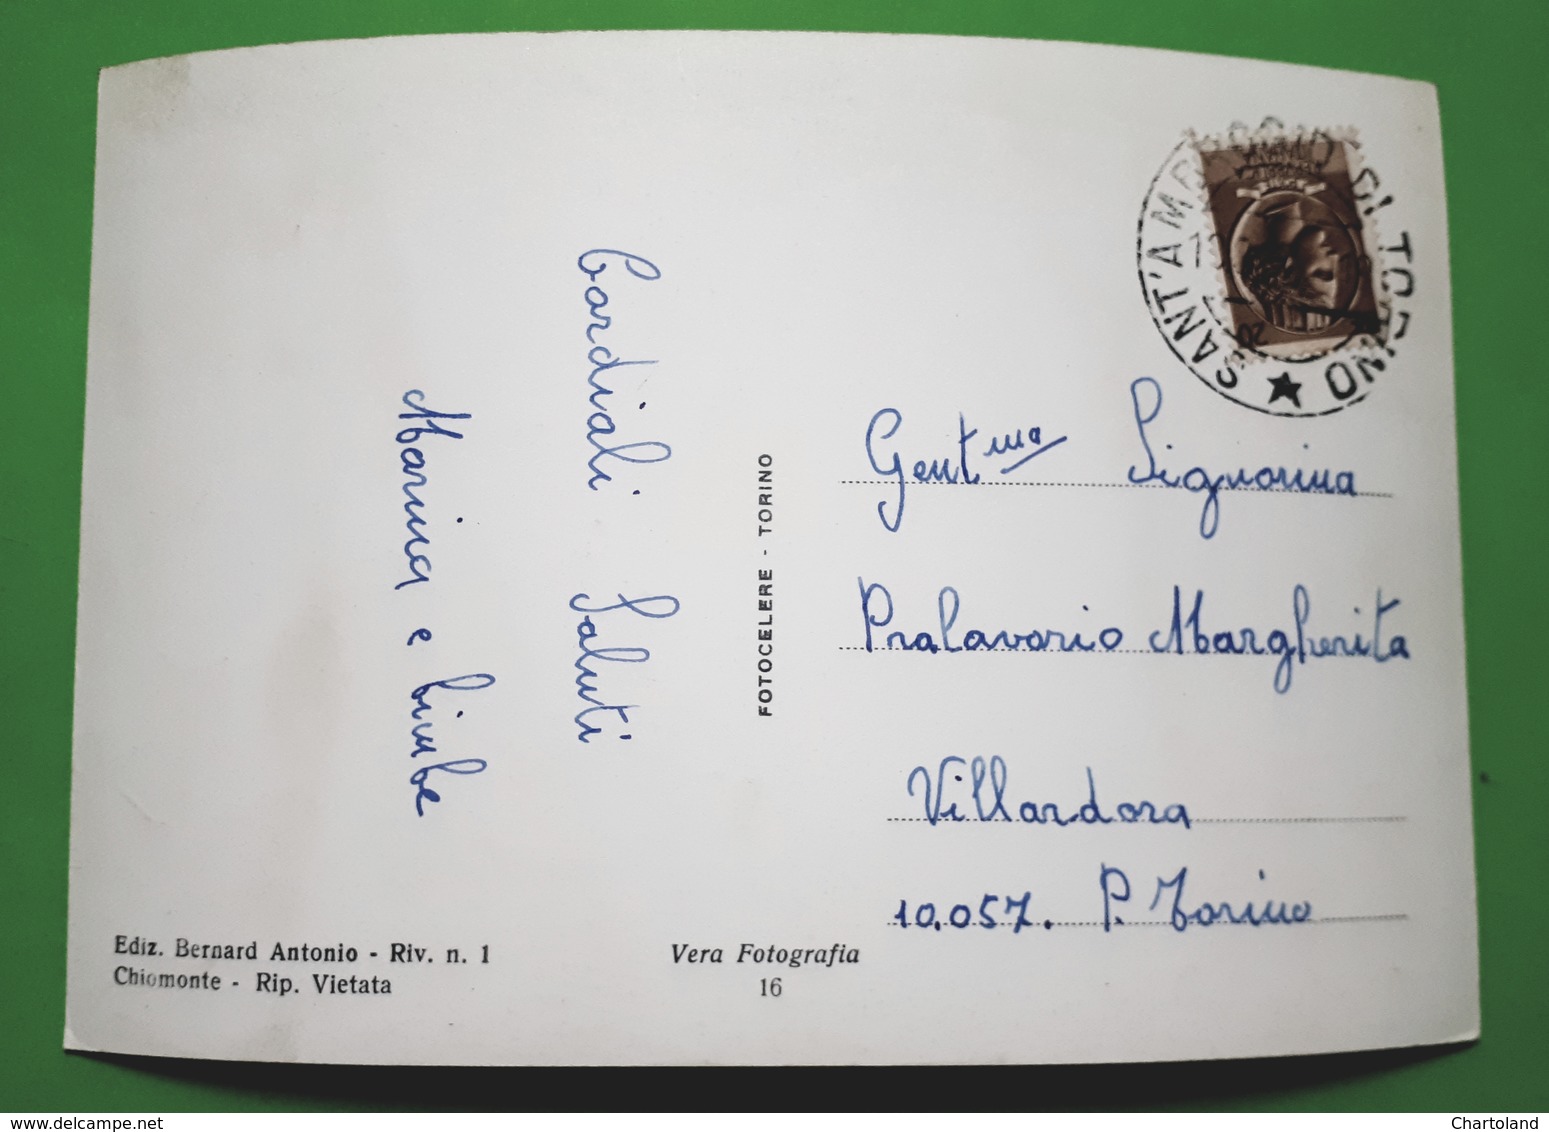 Cartolina - Saluti Da Pian Mesdi - Chiomonte - 1950 Ca. - Altri & Non Classificati